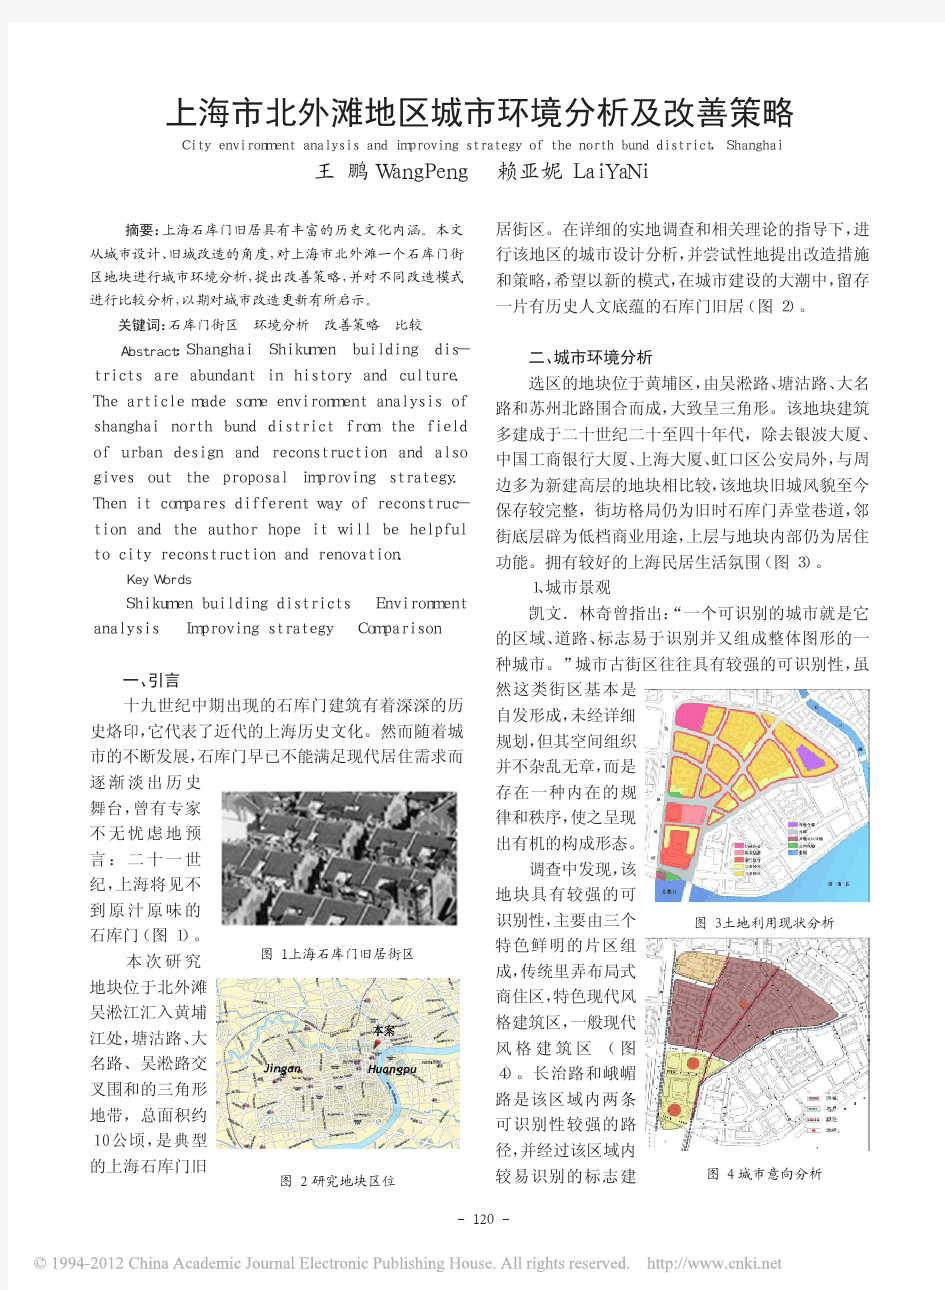 上海市北外滩地区城市环境分析及改善策略